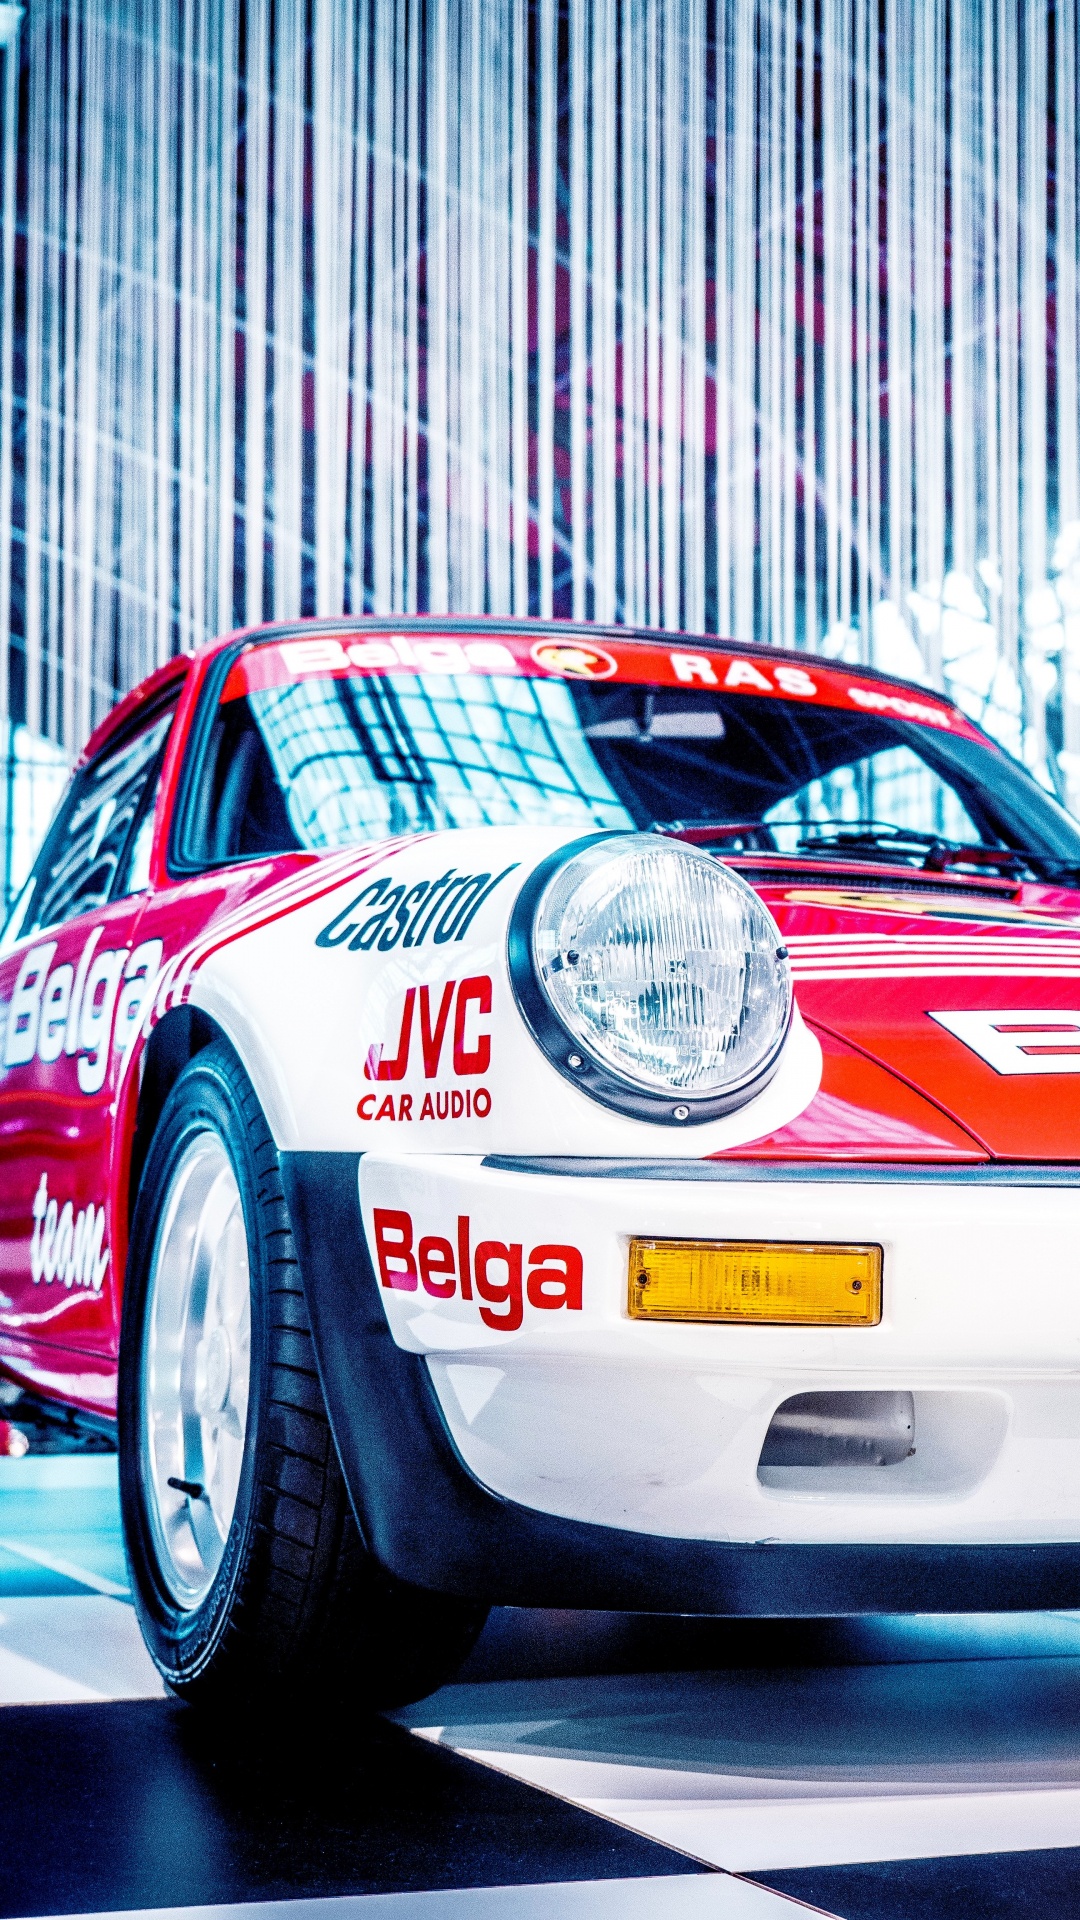 Porsche 911 Blanco y Rojo. Wallpaper in 1080x1920 Resolution